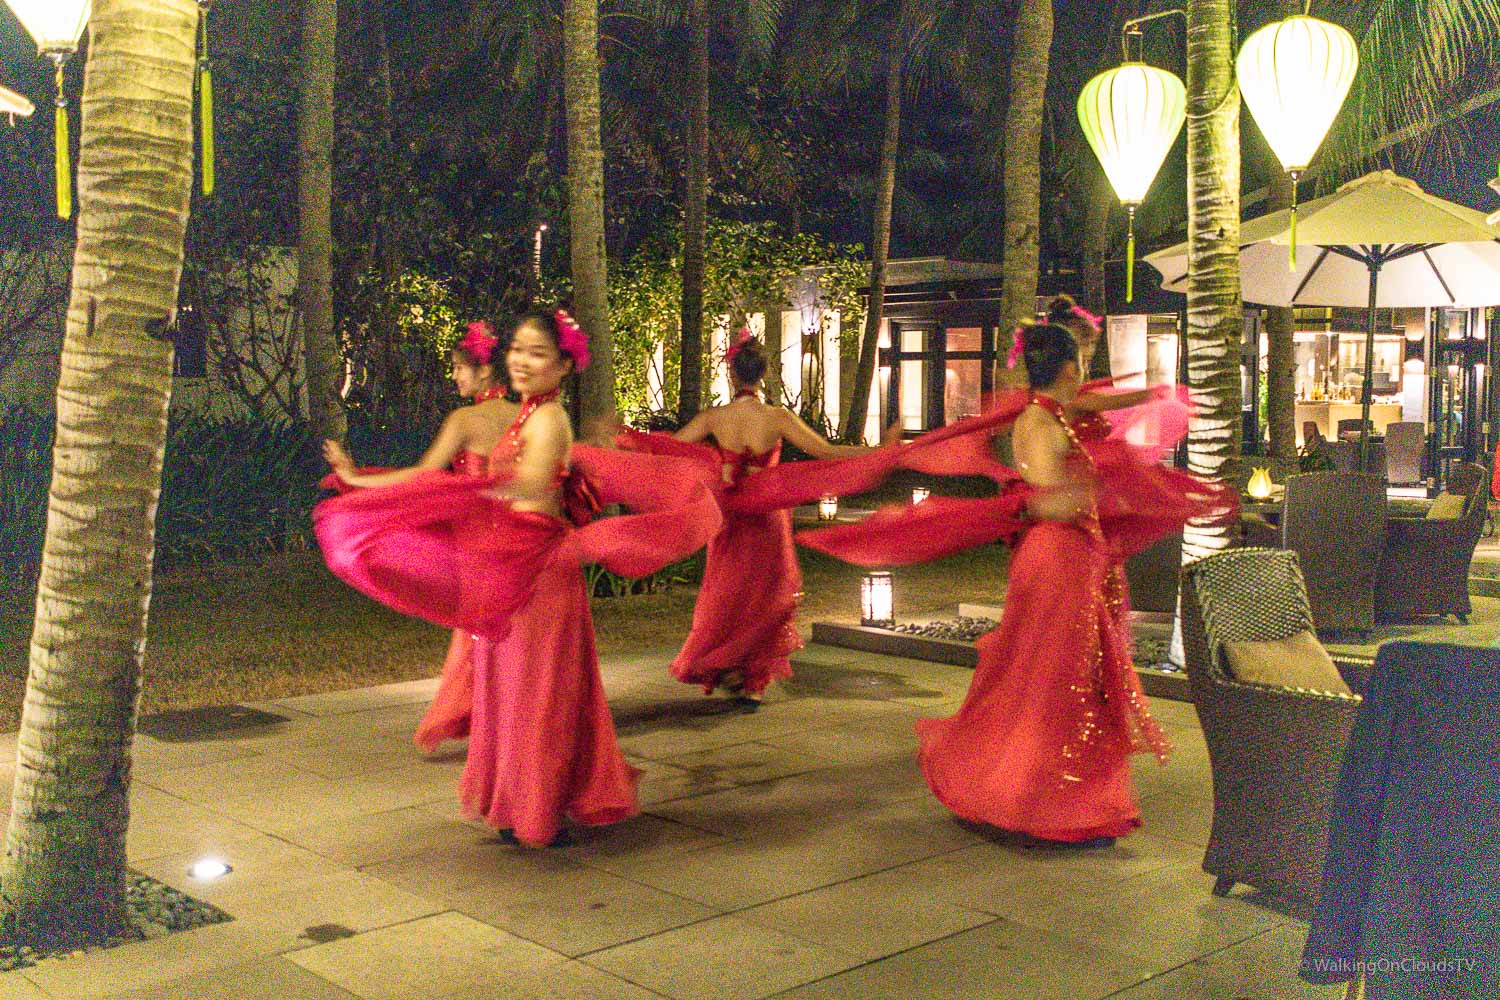 Das Four Seasons Resort - The Nam Hai - Hoi An, Vietnam. 100 Villen verteilt auf 35 Hektar direkt am Meer, riesige Poollandschaft, Spa, Wellness, fantastisches Essen, Erholung und Entspannung vom Feinsten